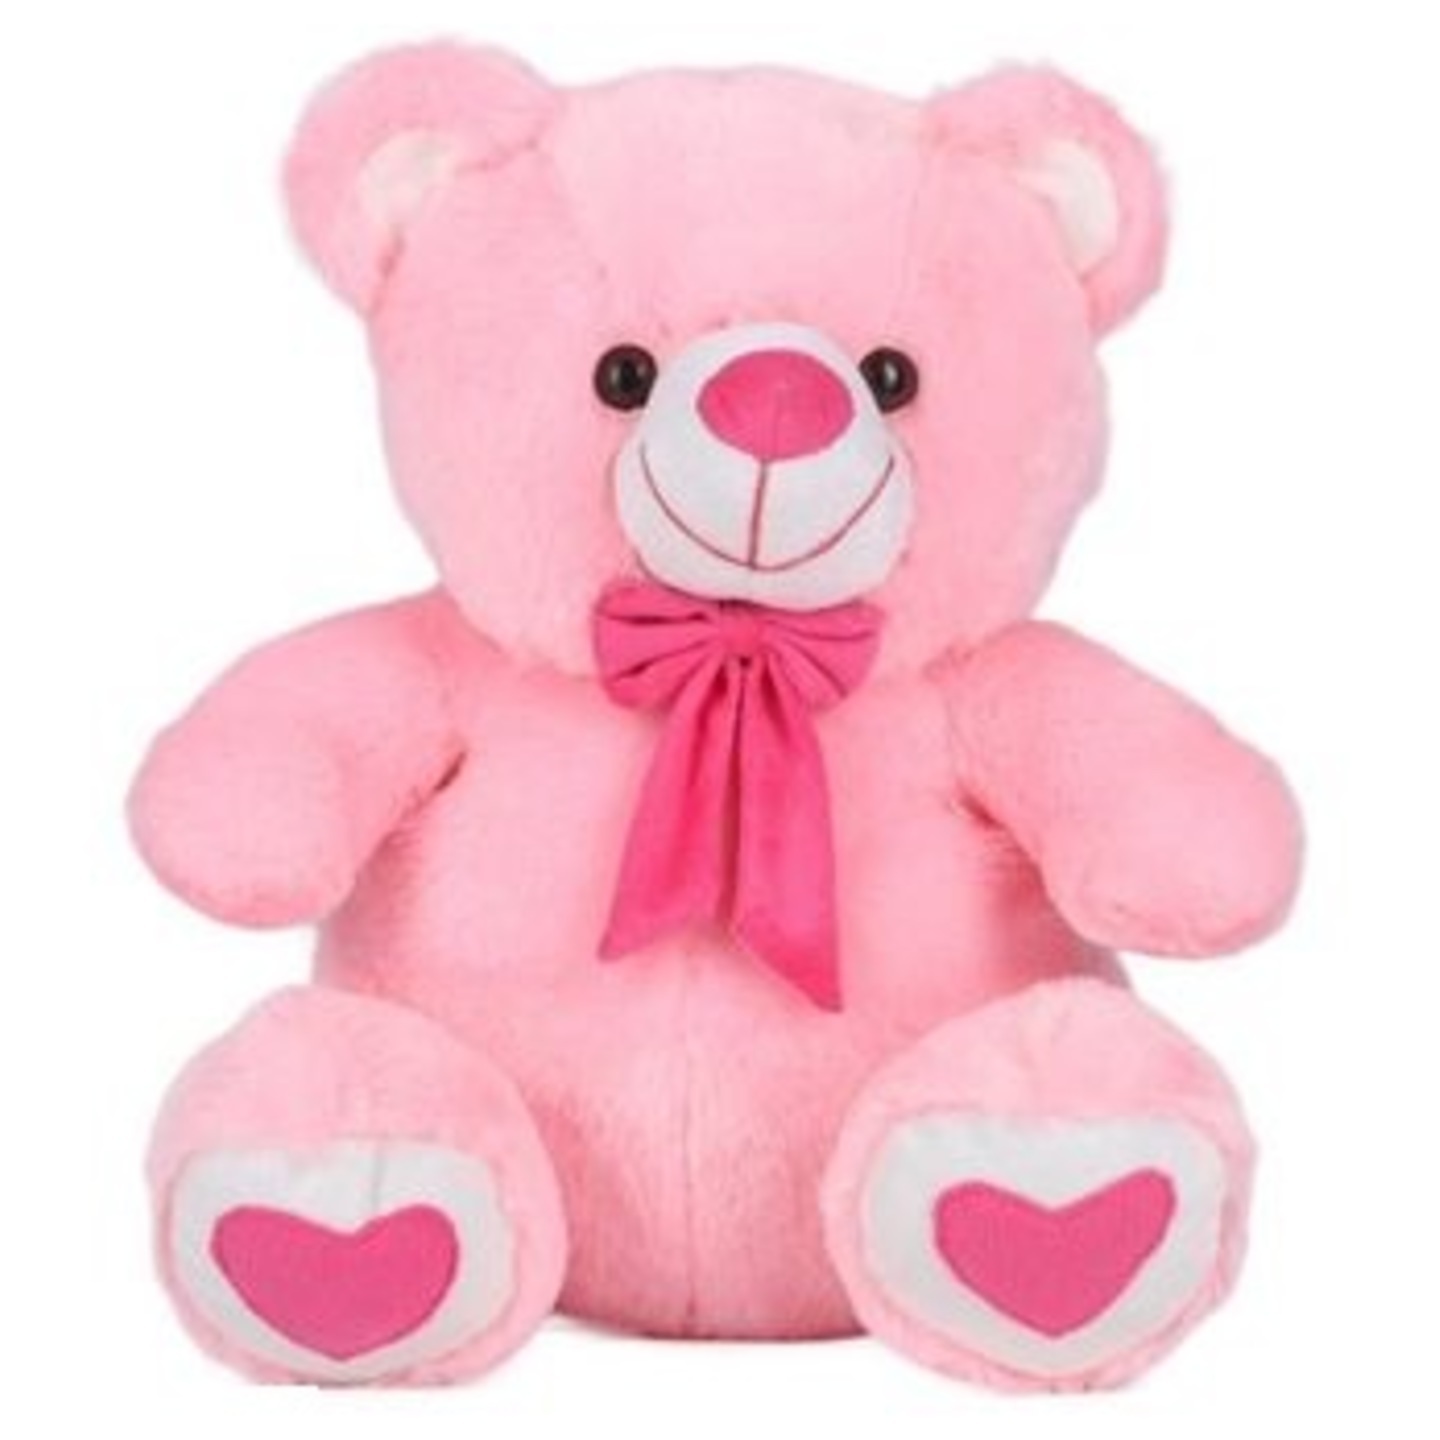 Stuffed Soft Cute Pink Teddy Bear